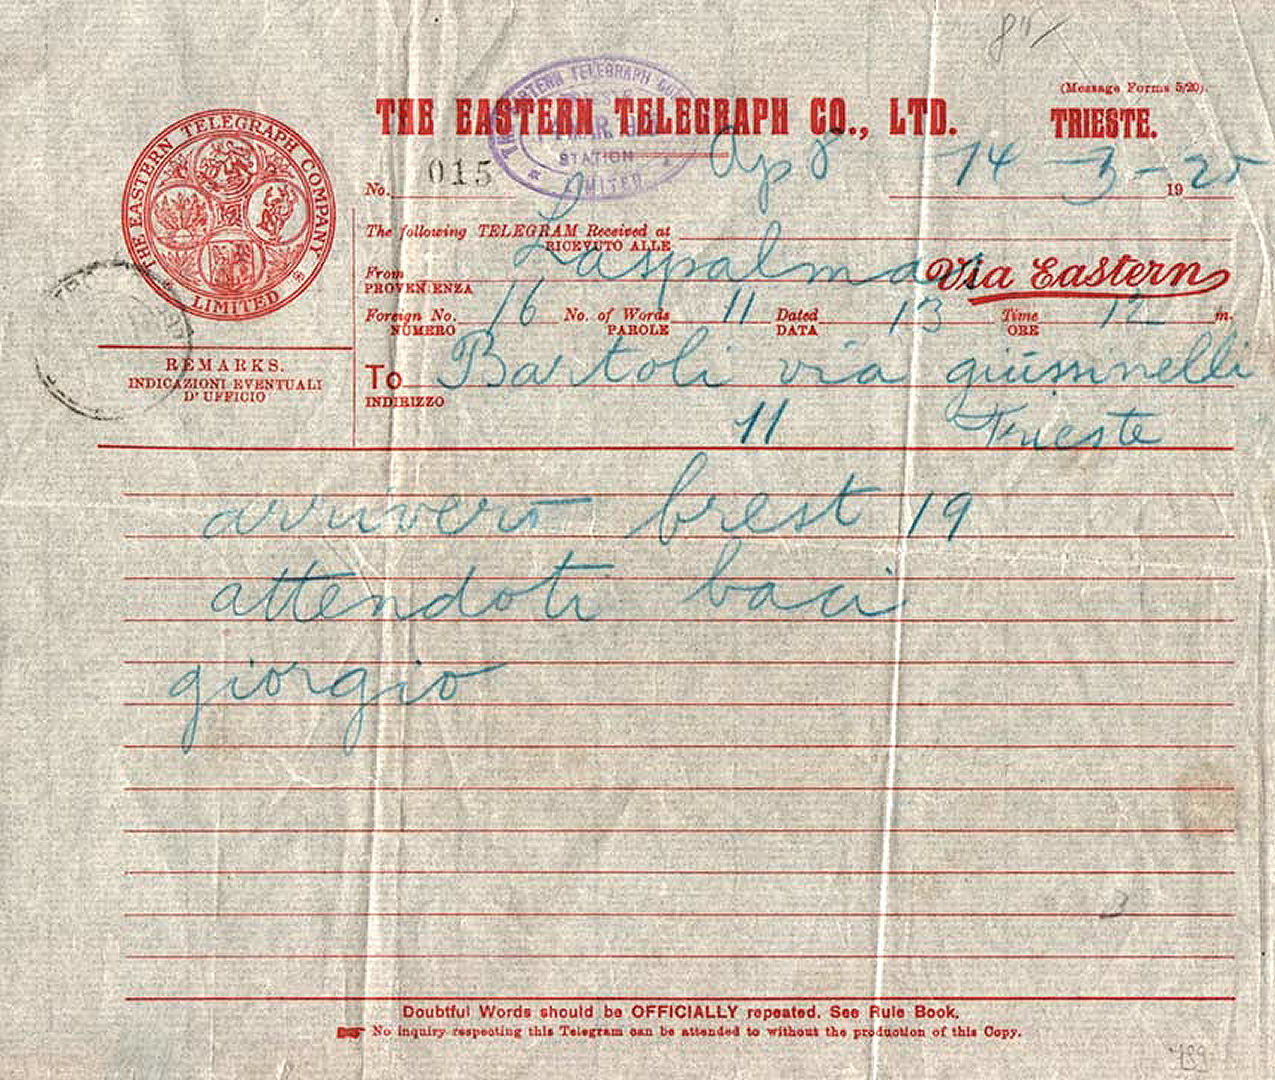 Eastern, 1925 Trieste Telegram